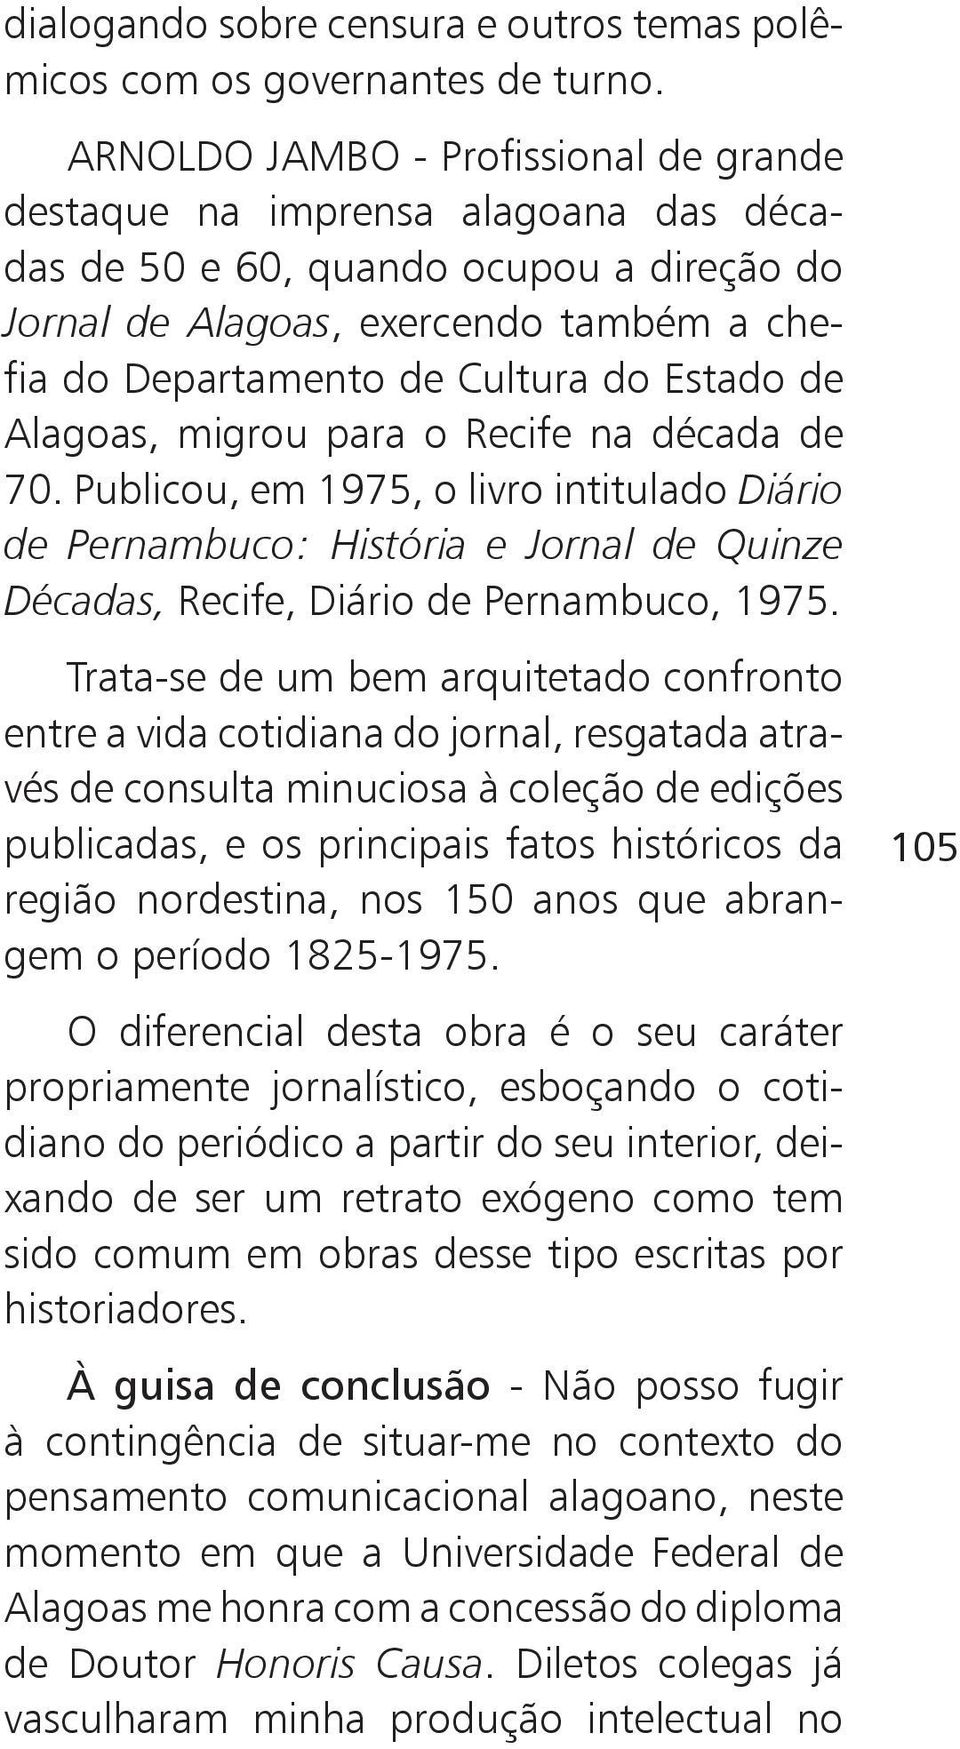 Estado de Alagoas, migrou para o Recife na década de 70. Publicou, em 1975, o livro intitulado Diário de Pernambuco: História e Jornal de Quinze Décadas, Recife, Diário de Pernambuco, 1975.